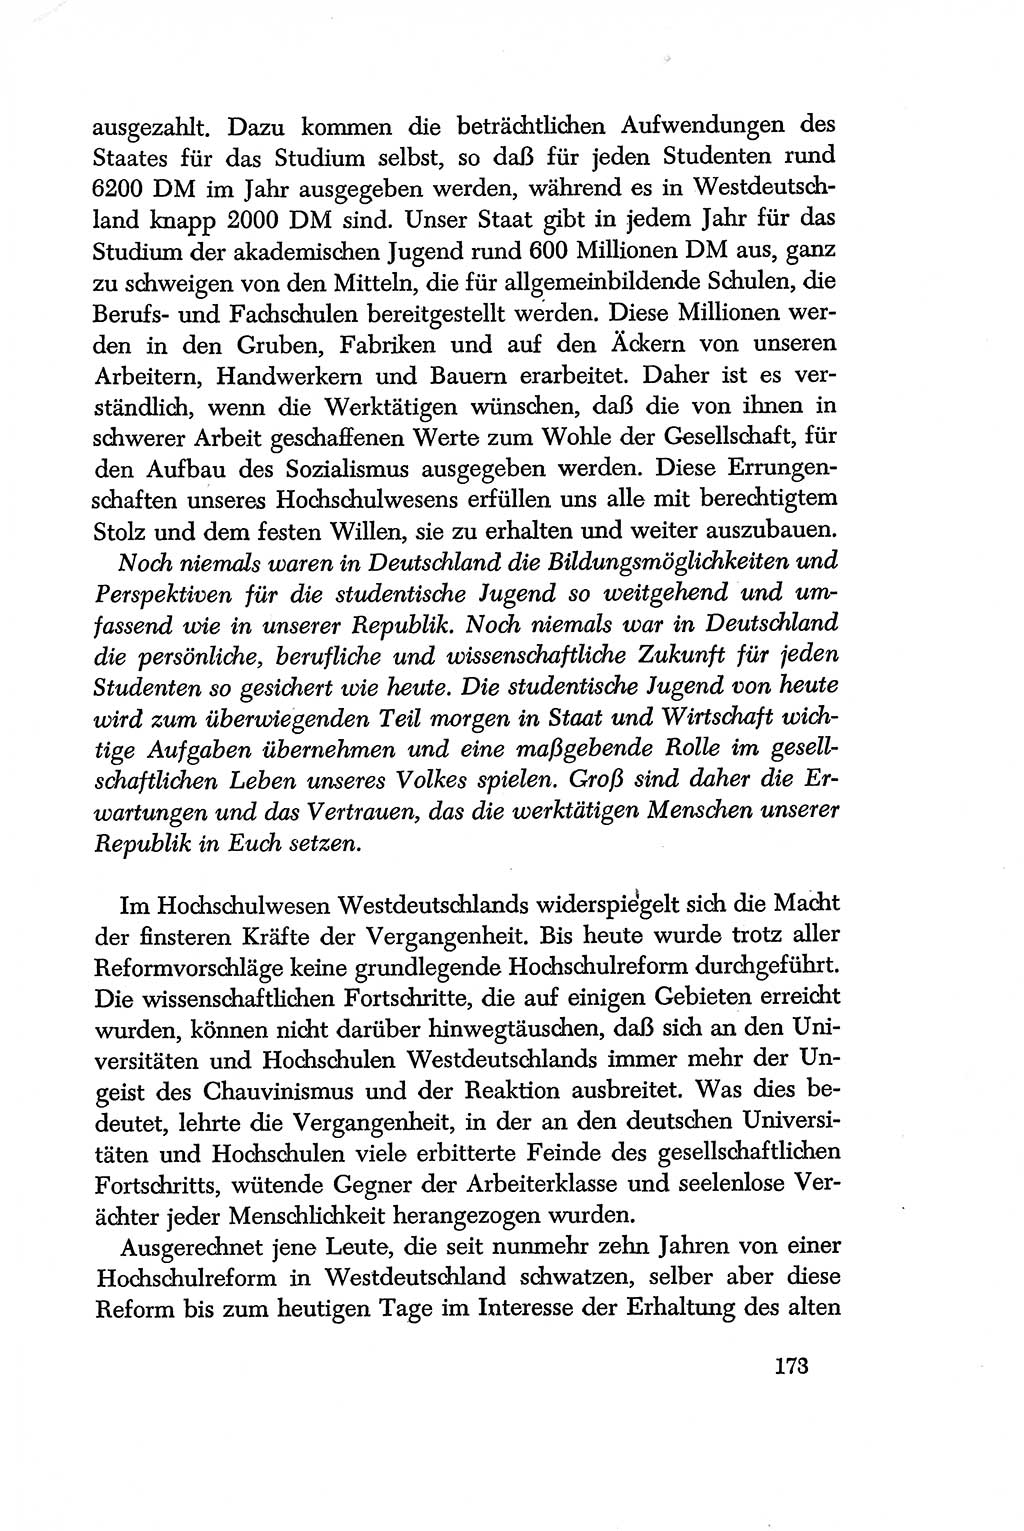 Dokumente der Sozialistischen Einheitspartei Deutschlands (SED) [Deutsche Demokratische Republik (DDR)] 1956-1957, Seite 173 (Dok. SED DDR 1956-1957, S. 173)